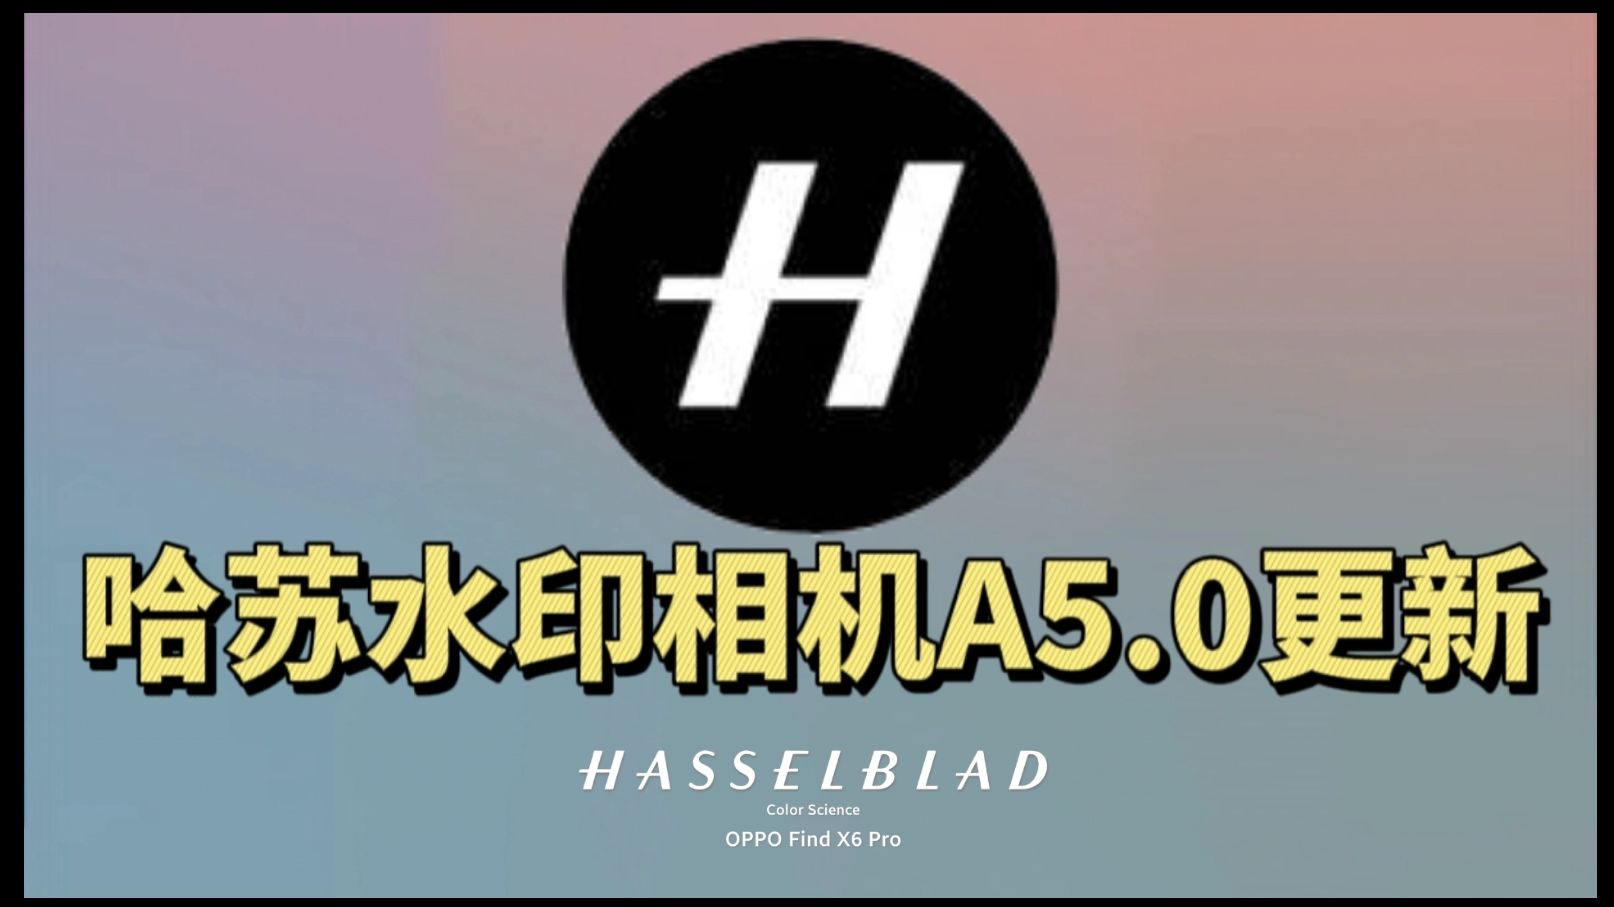 哈苏的高清logo图片